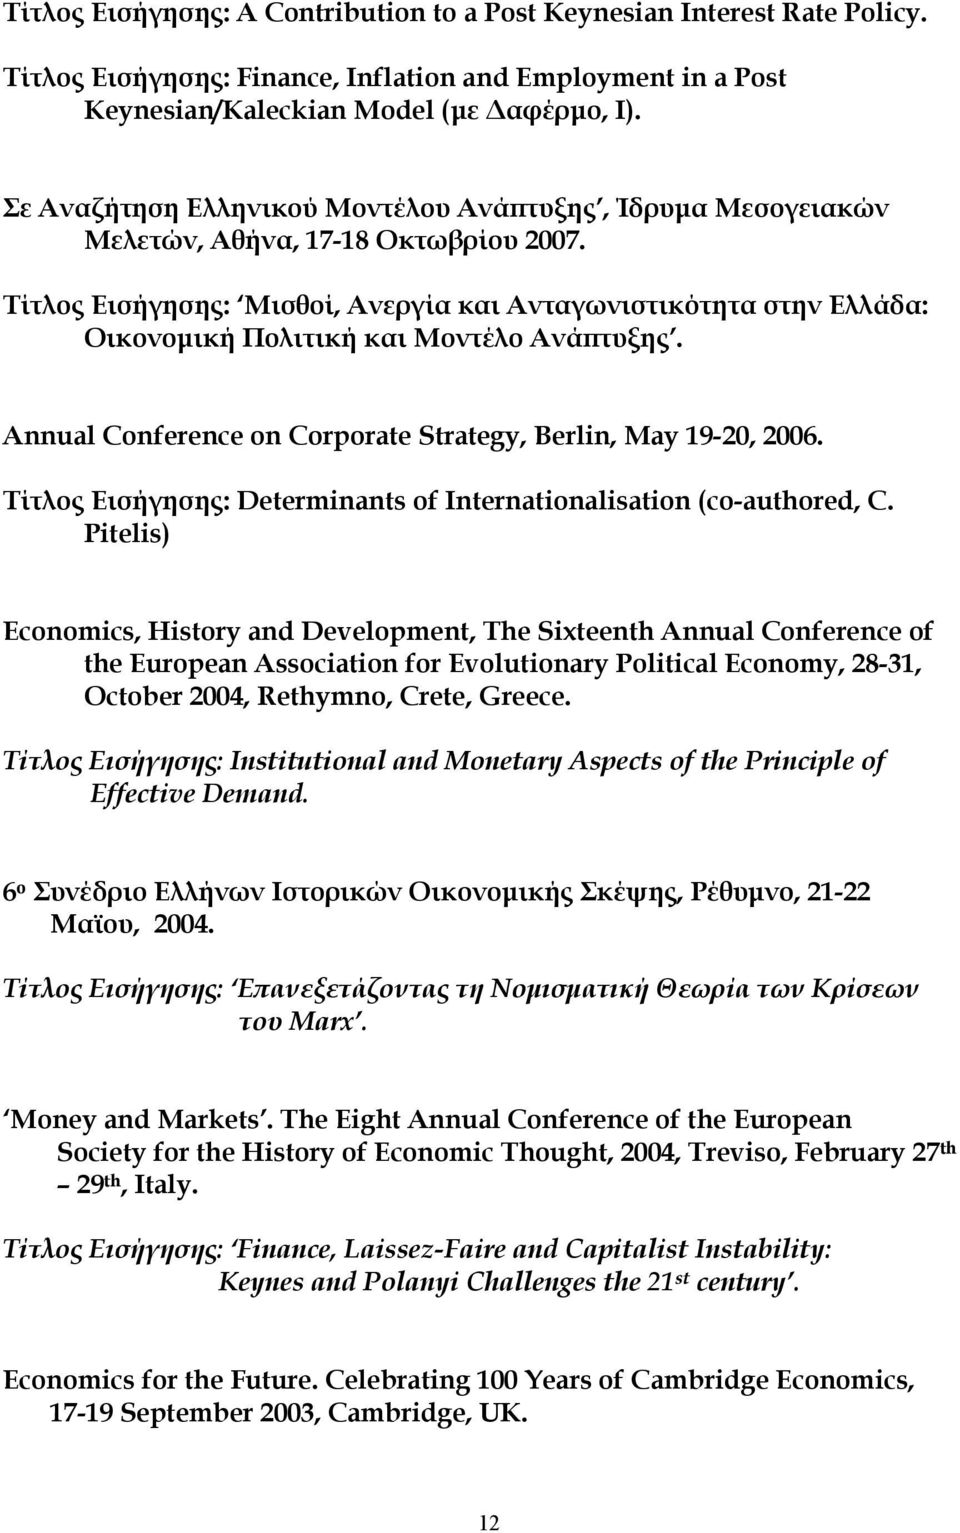 Τίτλος Εισήγησης: Μισθοί, Ανεργία και Ανταγωνιστικότητα στην Ελλάδα: Οικονομική Πολιτική και Μοντέλο Ανάπτυξης. Annual Conference on Corporate Strategy, Berlin, May 19-20, 2006.